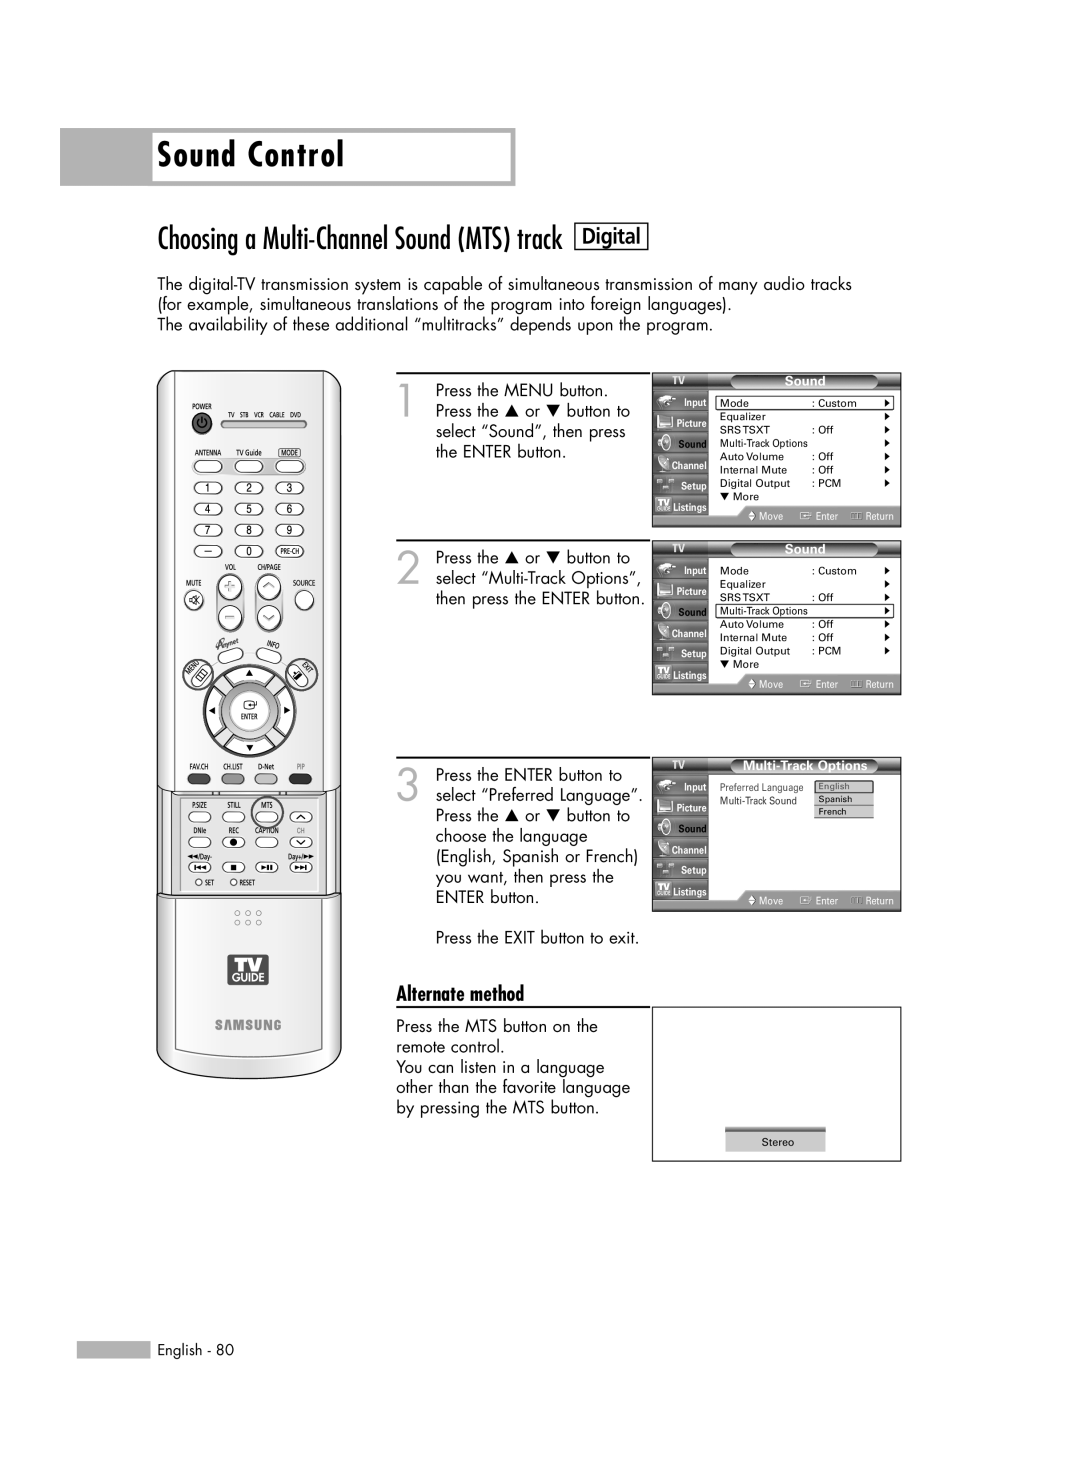 Samsung HL-R5688W Choosing a Multi-Channel Sound MTS track, Sound Control, Digital, Alternate method, Multi-Track Sound 